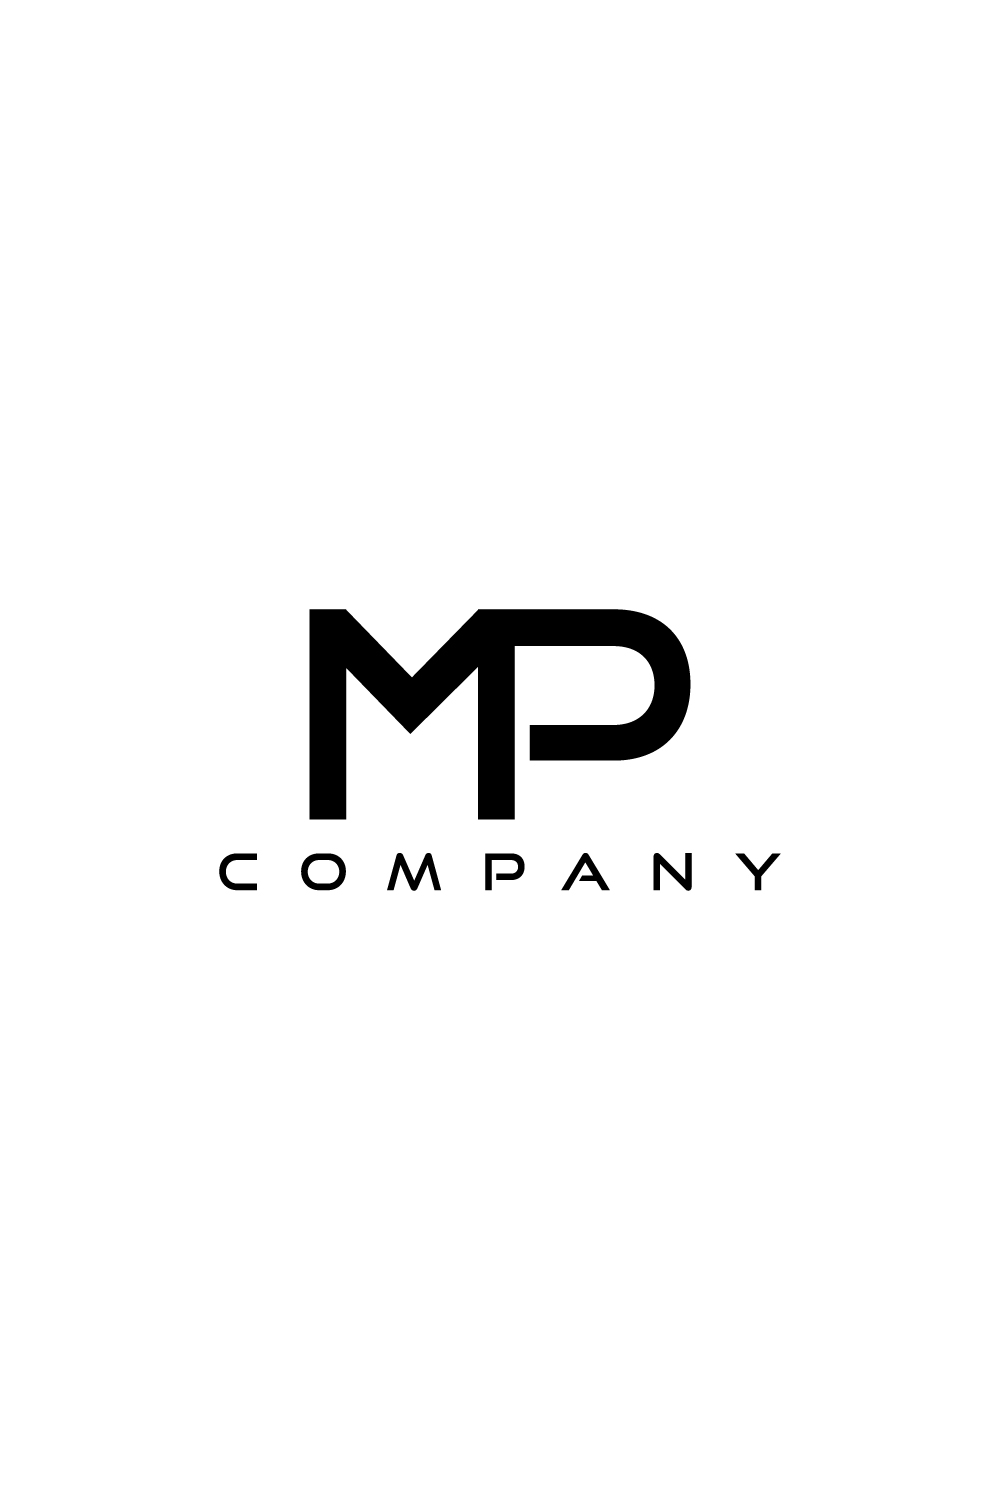 Pm Mp Monogram Logo - Logoku